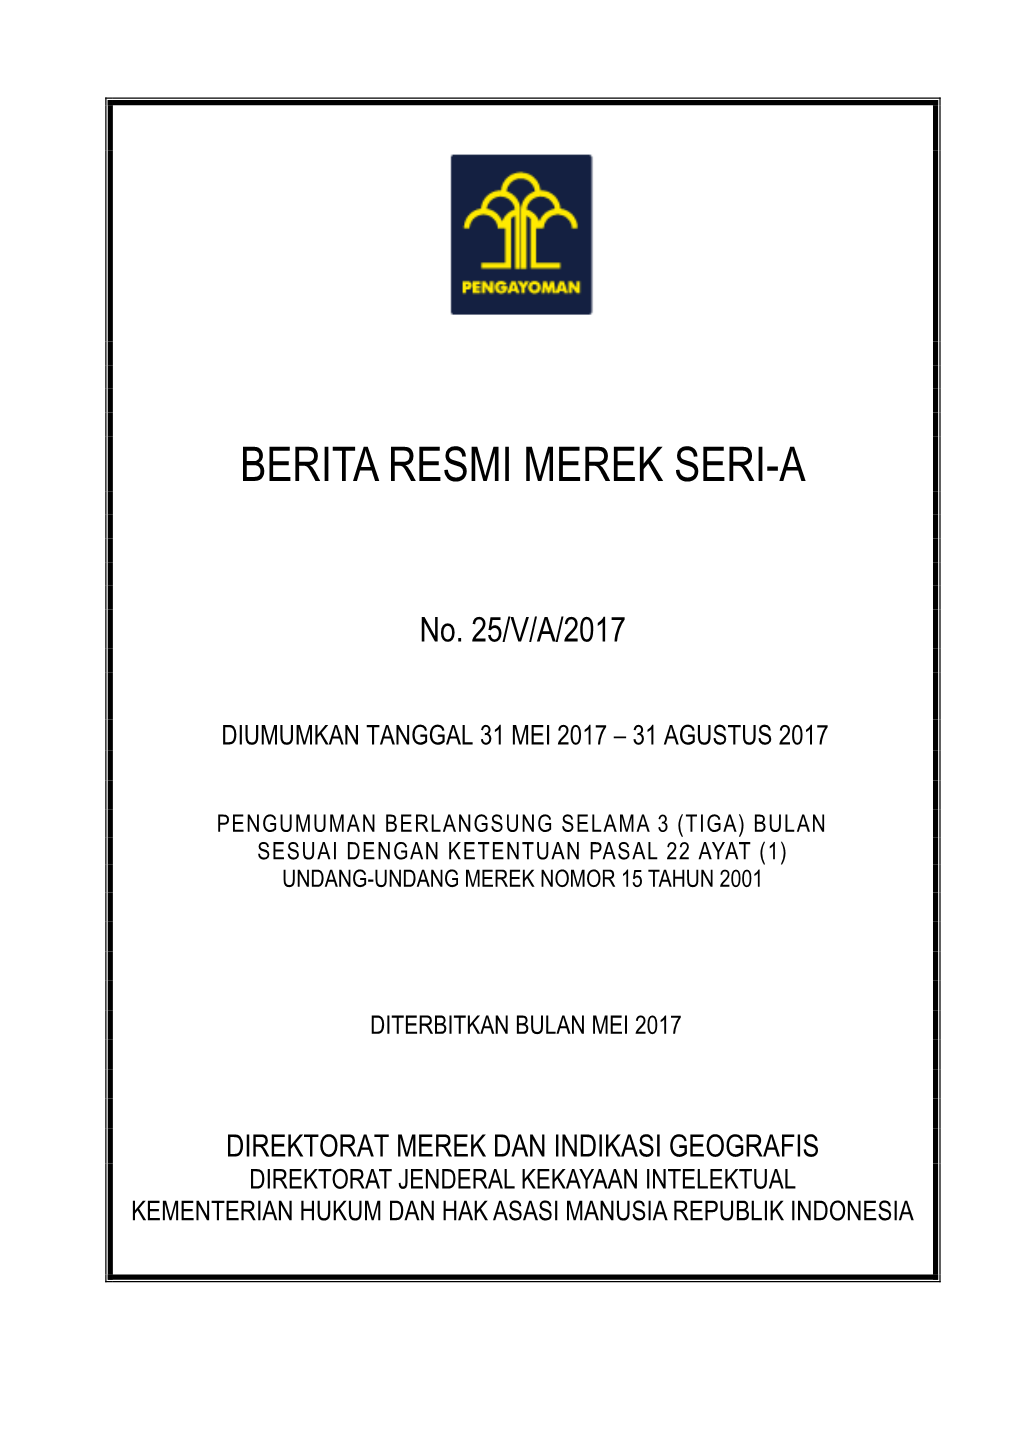 Berita Resmi Merek No. 25/V/A/2017